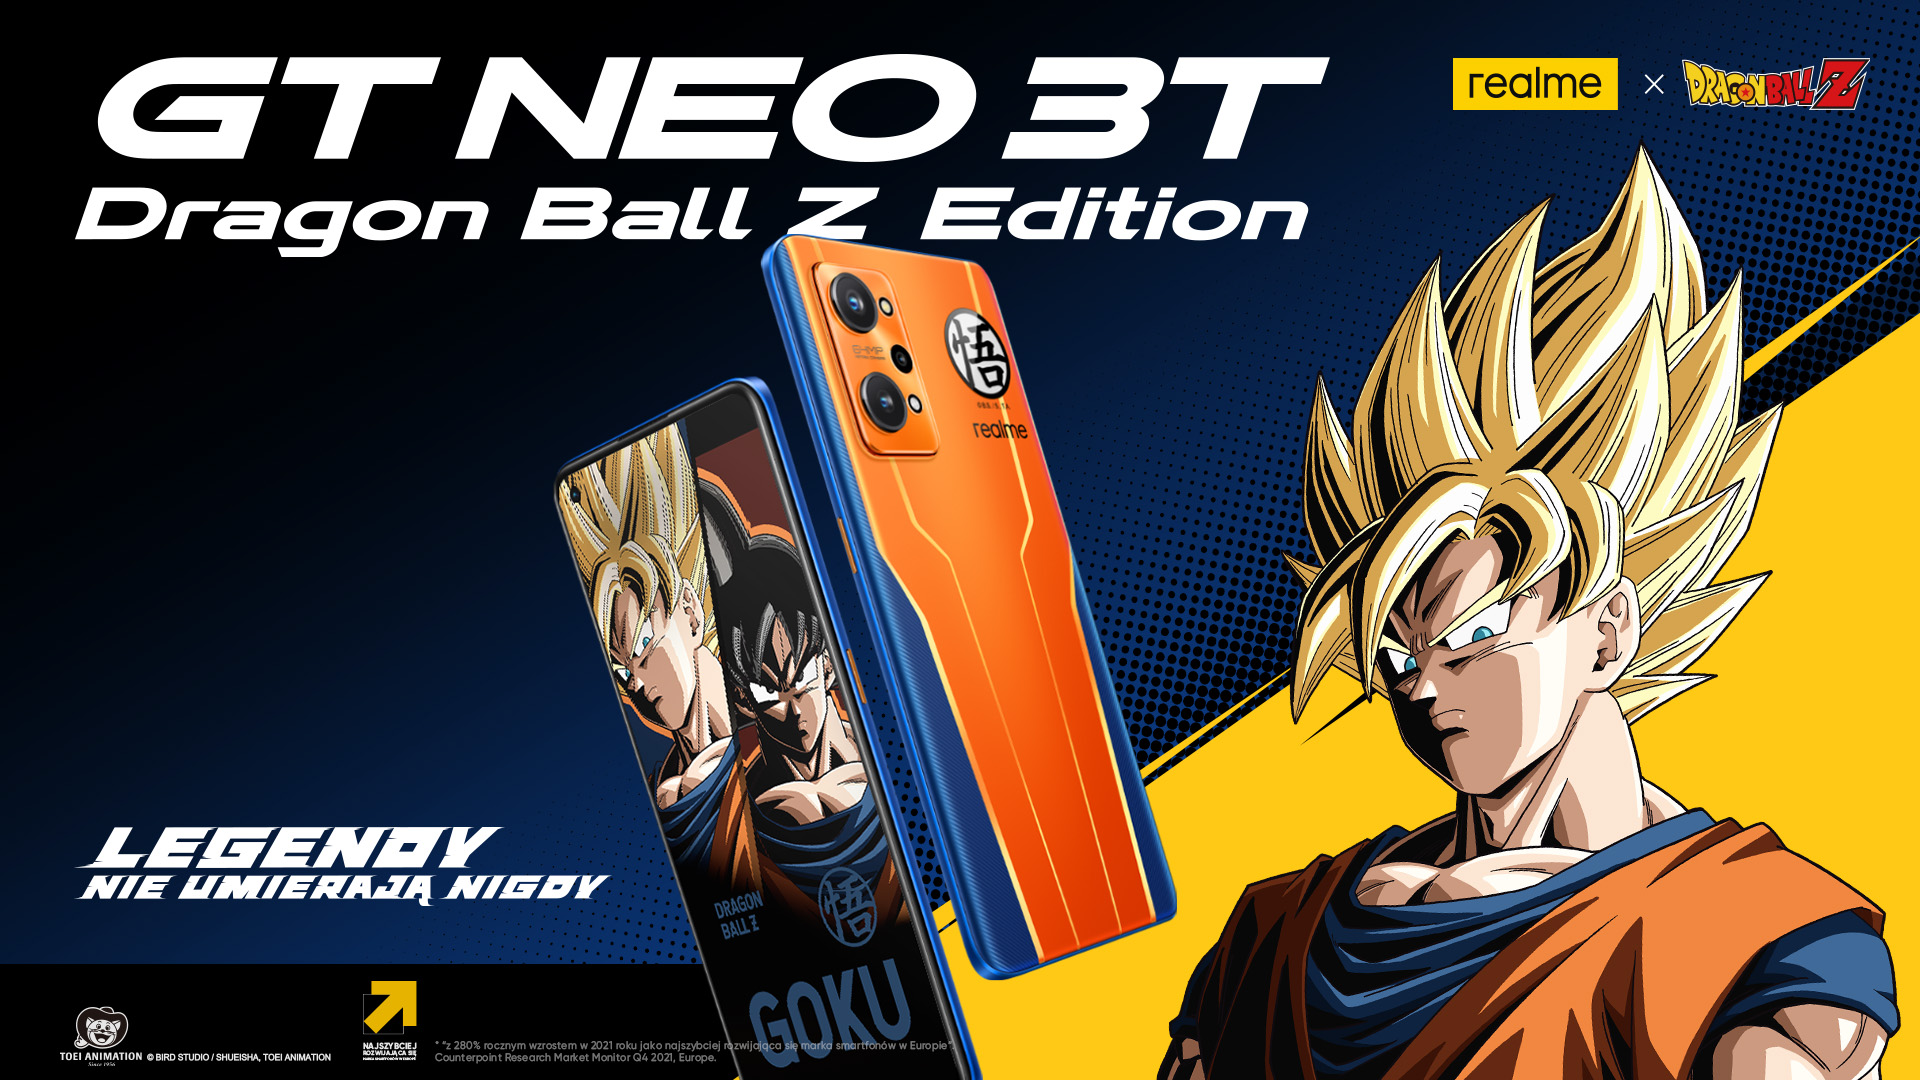 Rusza sprzedaż wyjątkowego smartfona realme - GT NEO 3T Dragon Ball Z Edition już dostępny